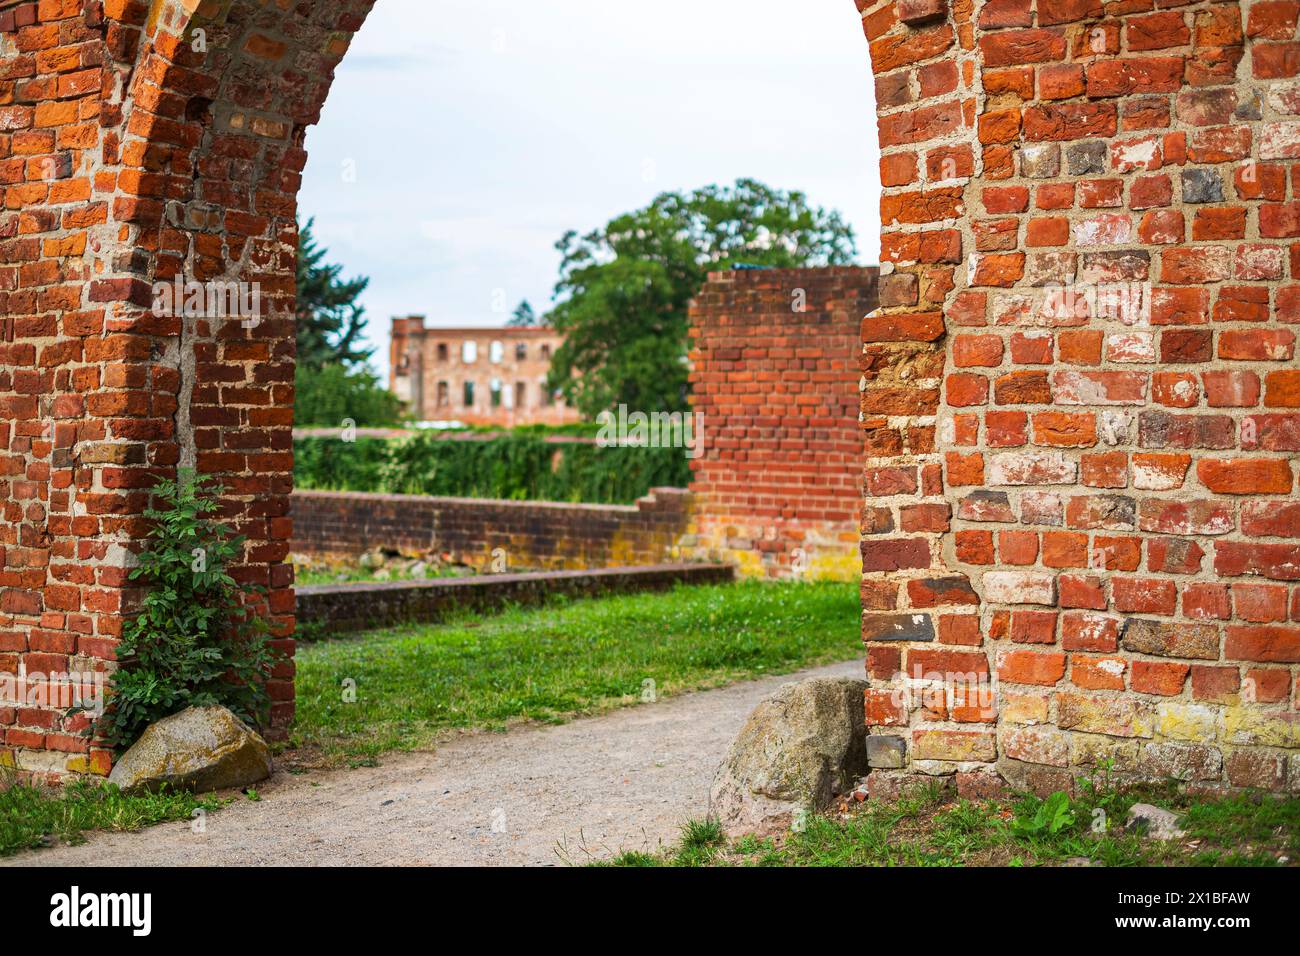 Porta medievale in rovina, ingresso al parco di Dargun Manor e monastero, distretto del lago di Meclemburgo, Meclemburgo-Pomerania occidentale, Germania. Foto Stock